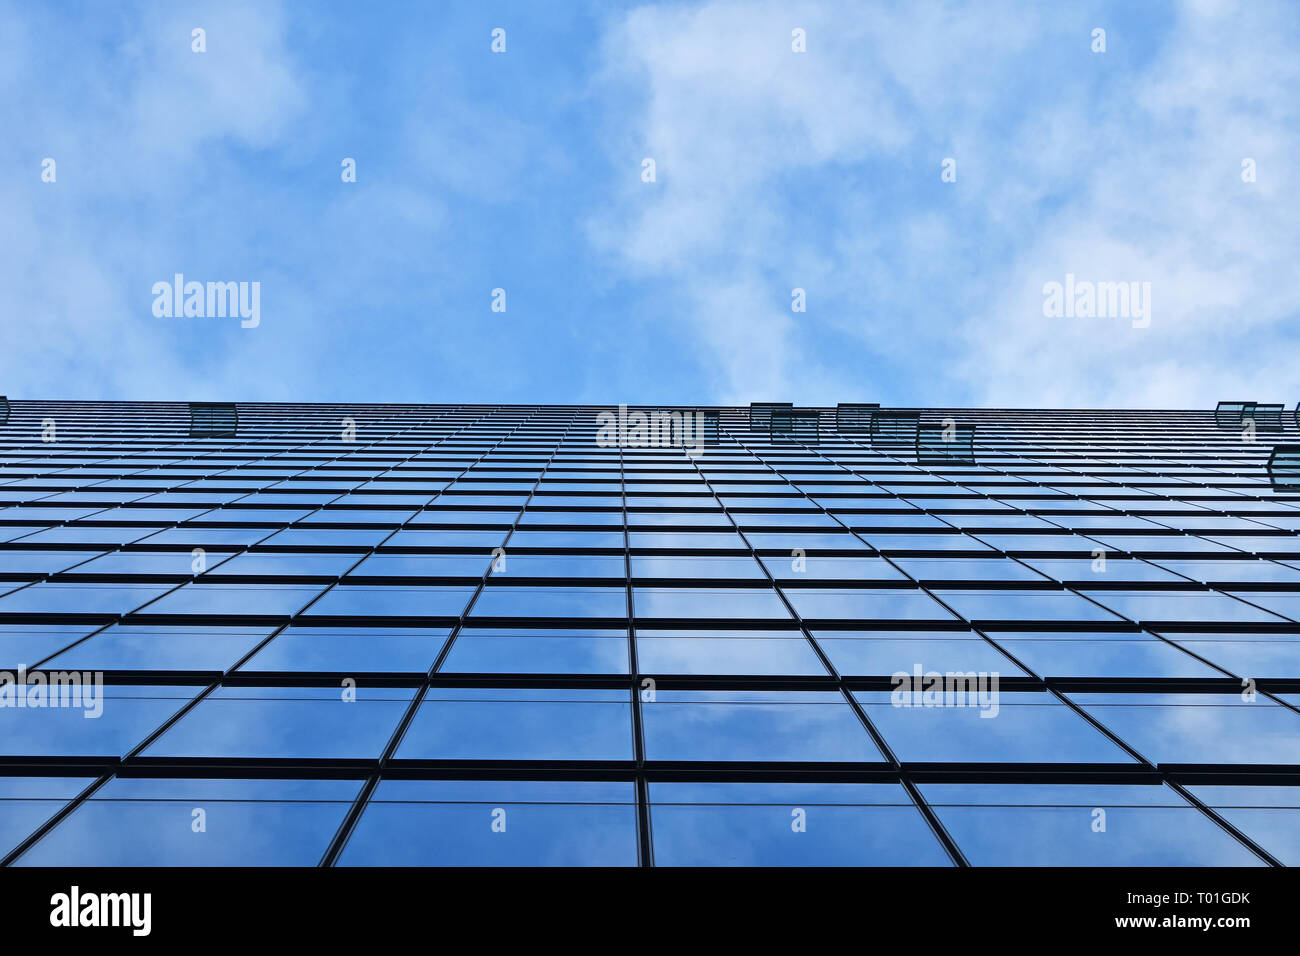 La texture de fond d'affaires moderne verre de construction de gratte-ciel avec motif windows plus de réflexion cloudy blue sky, low angle view Banque D'Images